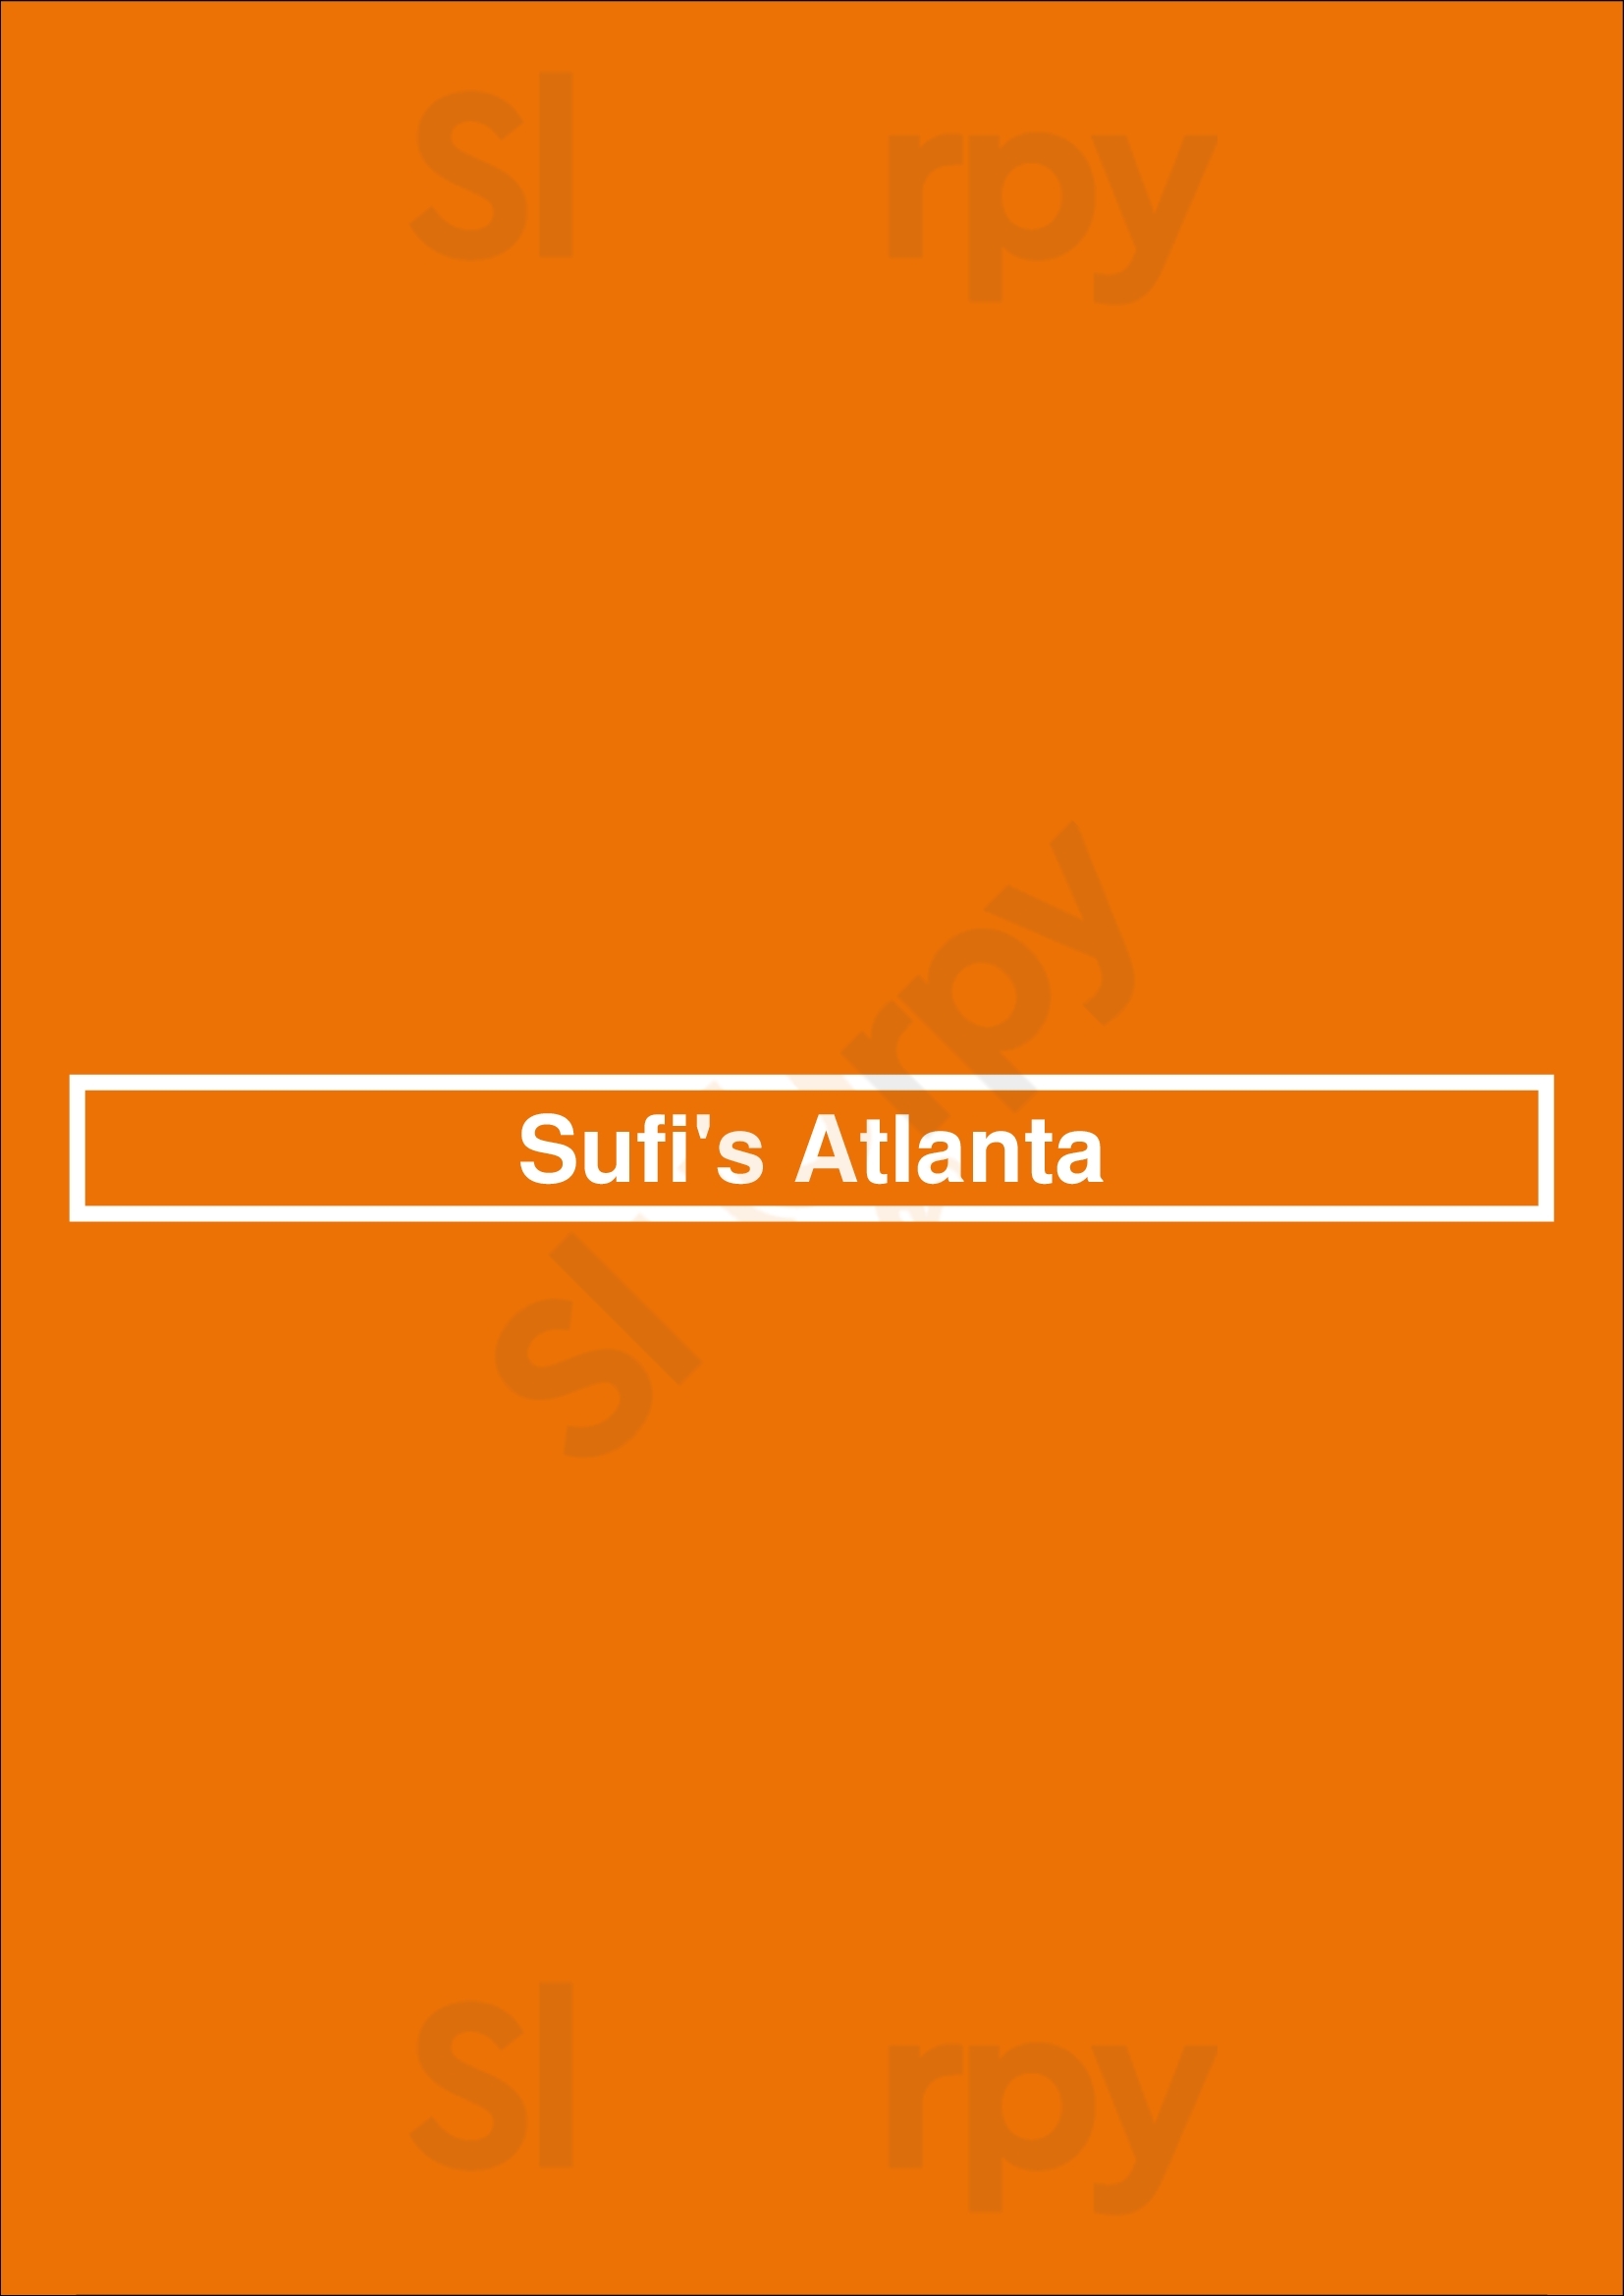 Sufi's Kitchen Atlanta Menu - 1